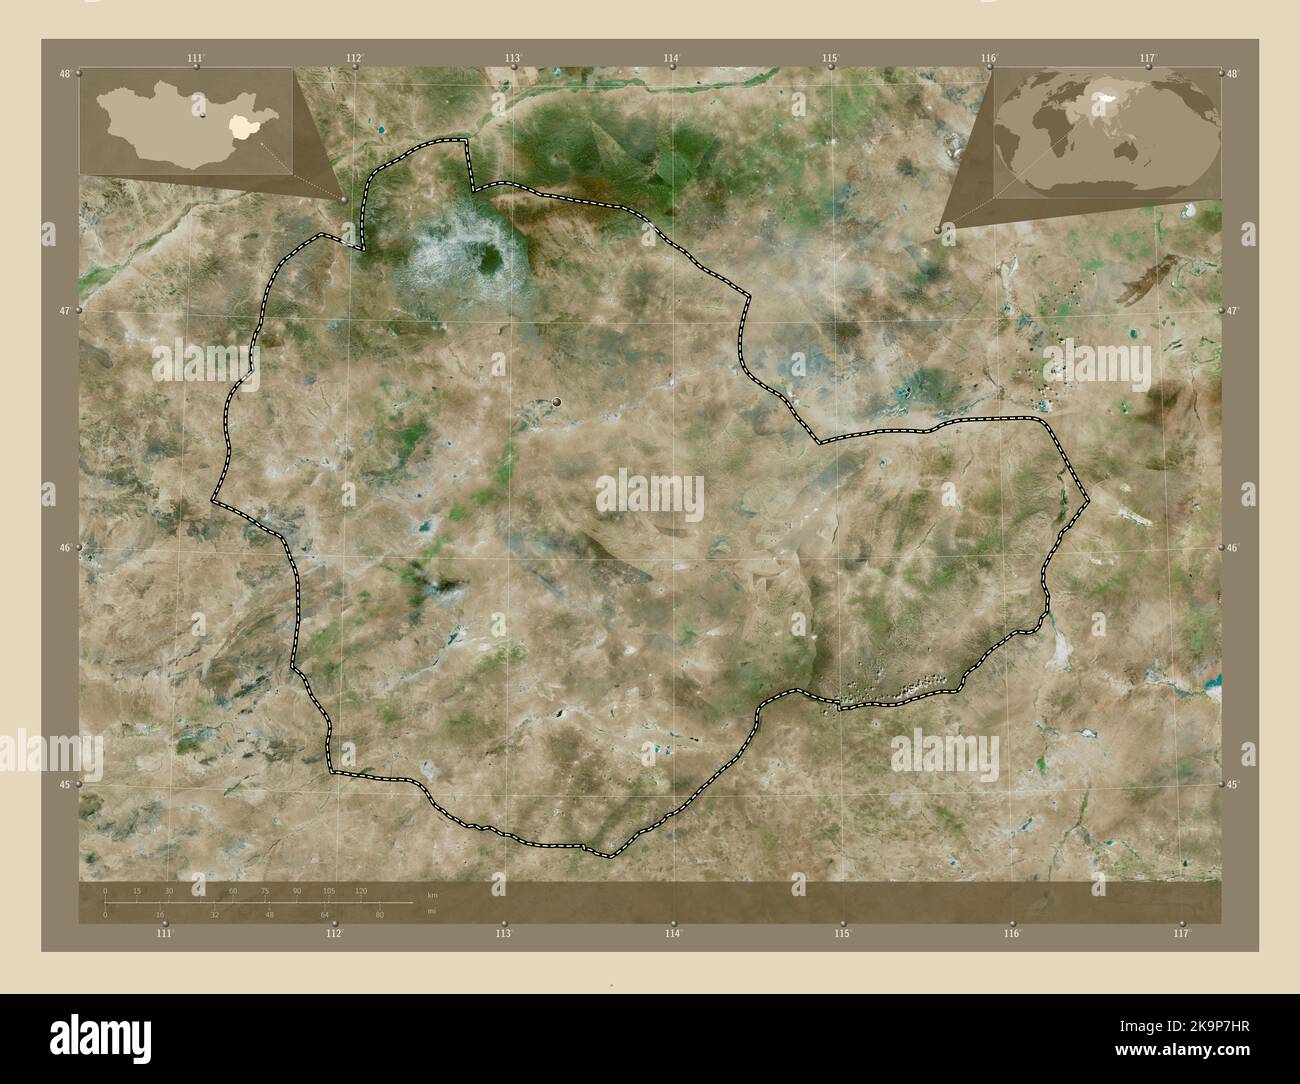 Suhbaatar, province de Mongolie. Carte satellite haute résolution. Lieux des principales villes de la région. Cartes d'emplacement auxiliaire d'angle Banque D'Images